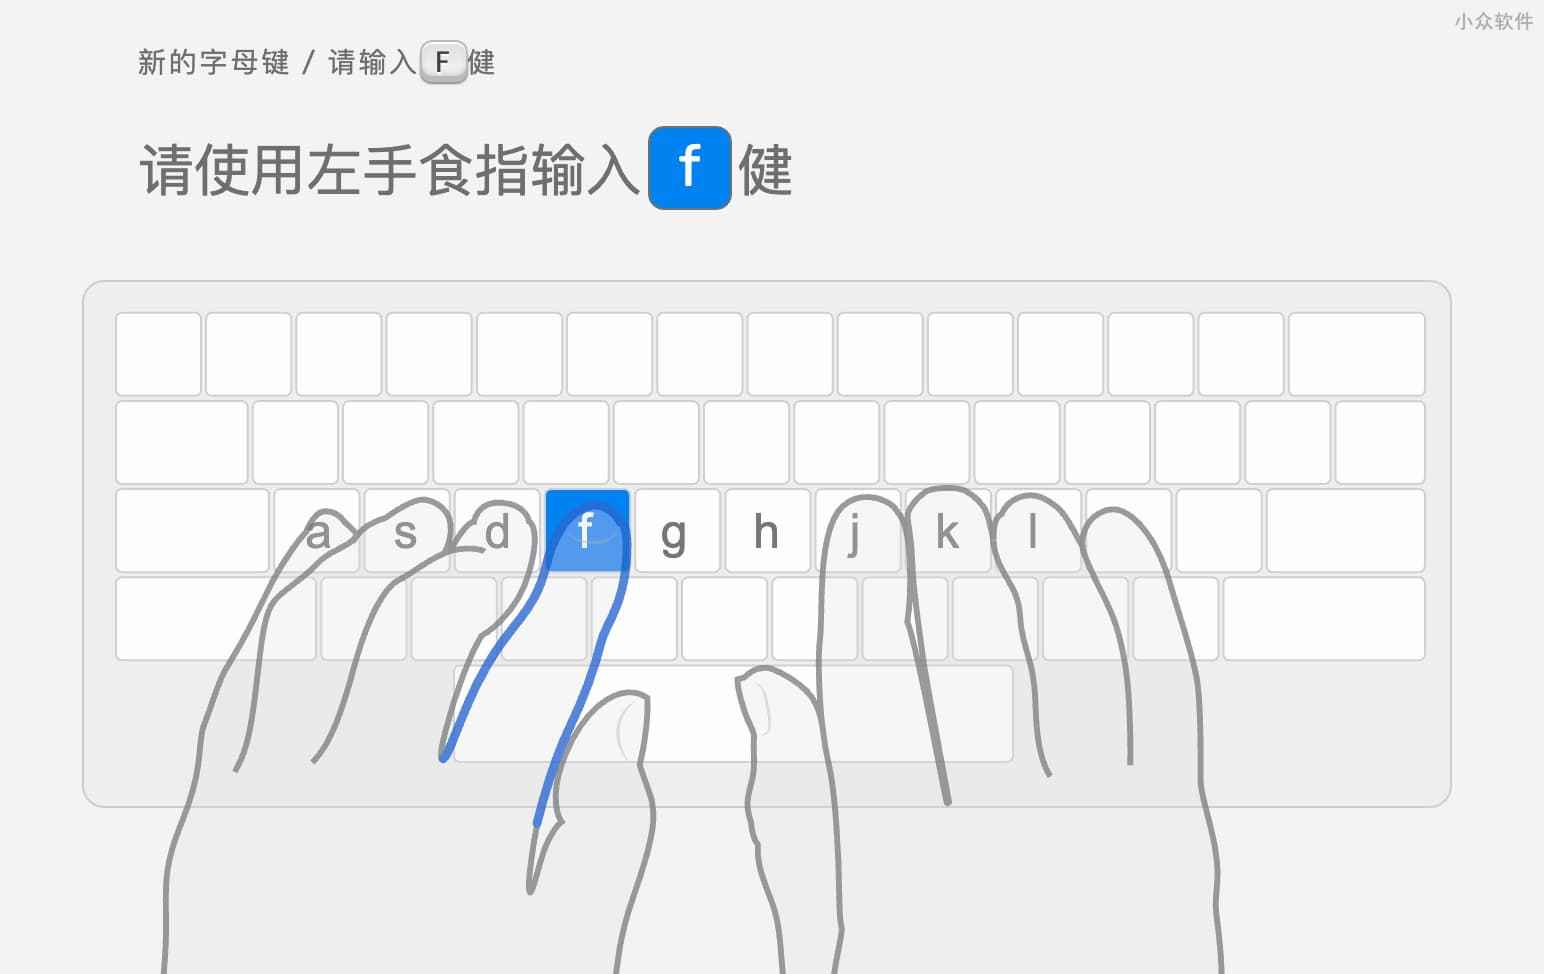 指法输入中文打字俱乐部（TypingClub）- 从 0 开始练习打字，支持多键盘布局、多语种、拼音，以及单手输入、旁白等 1